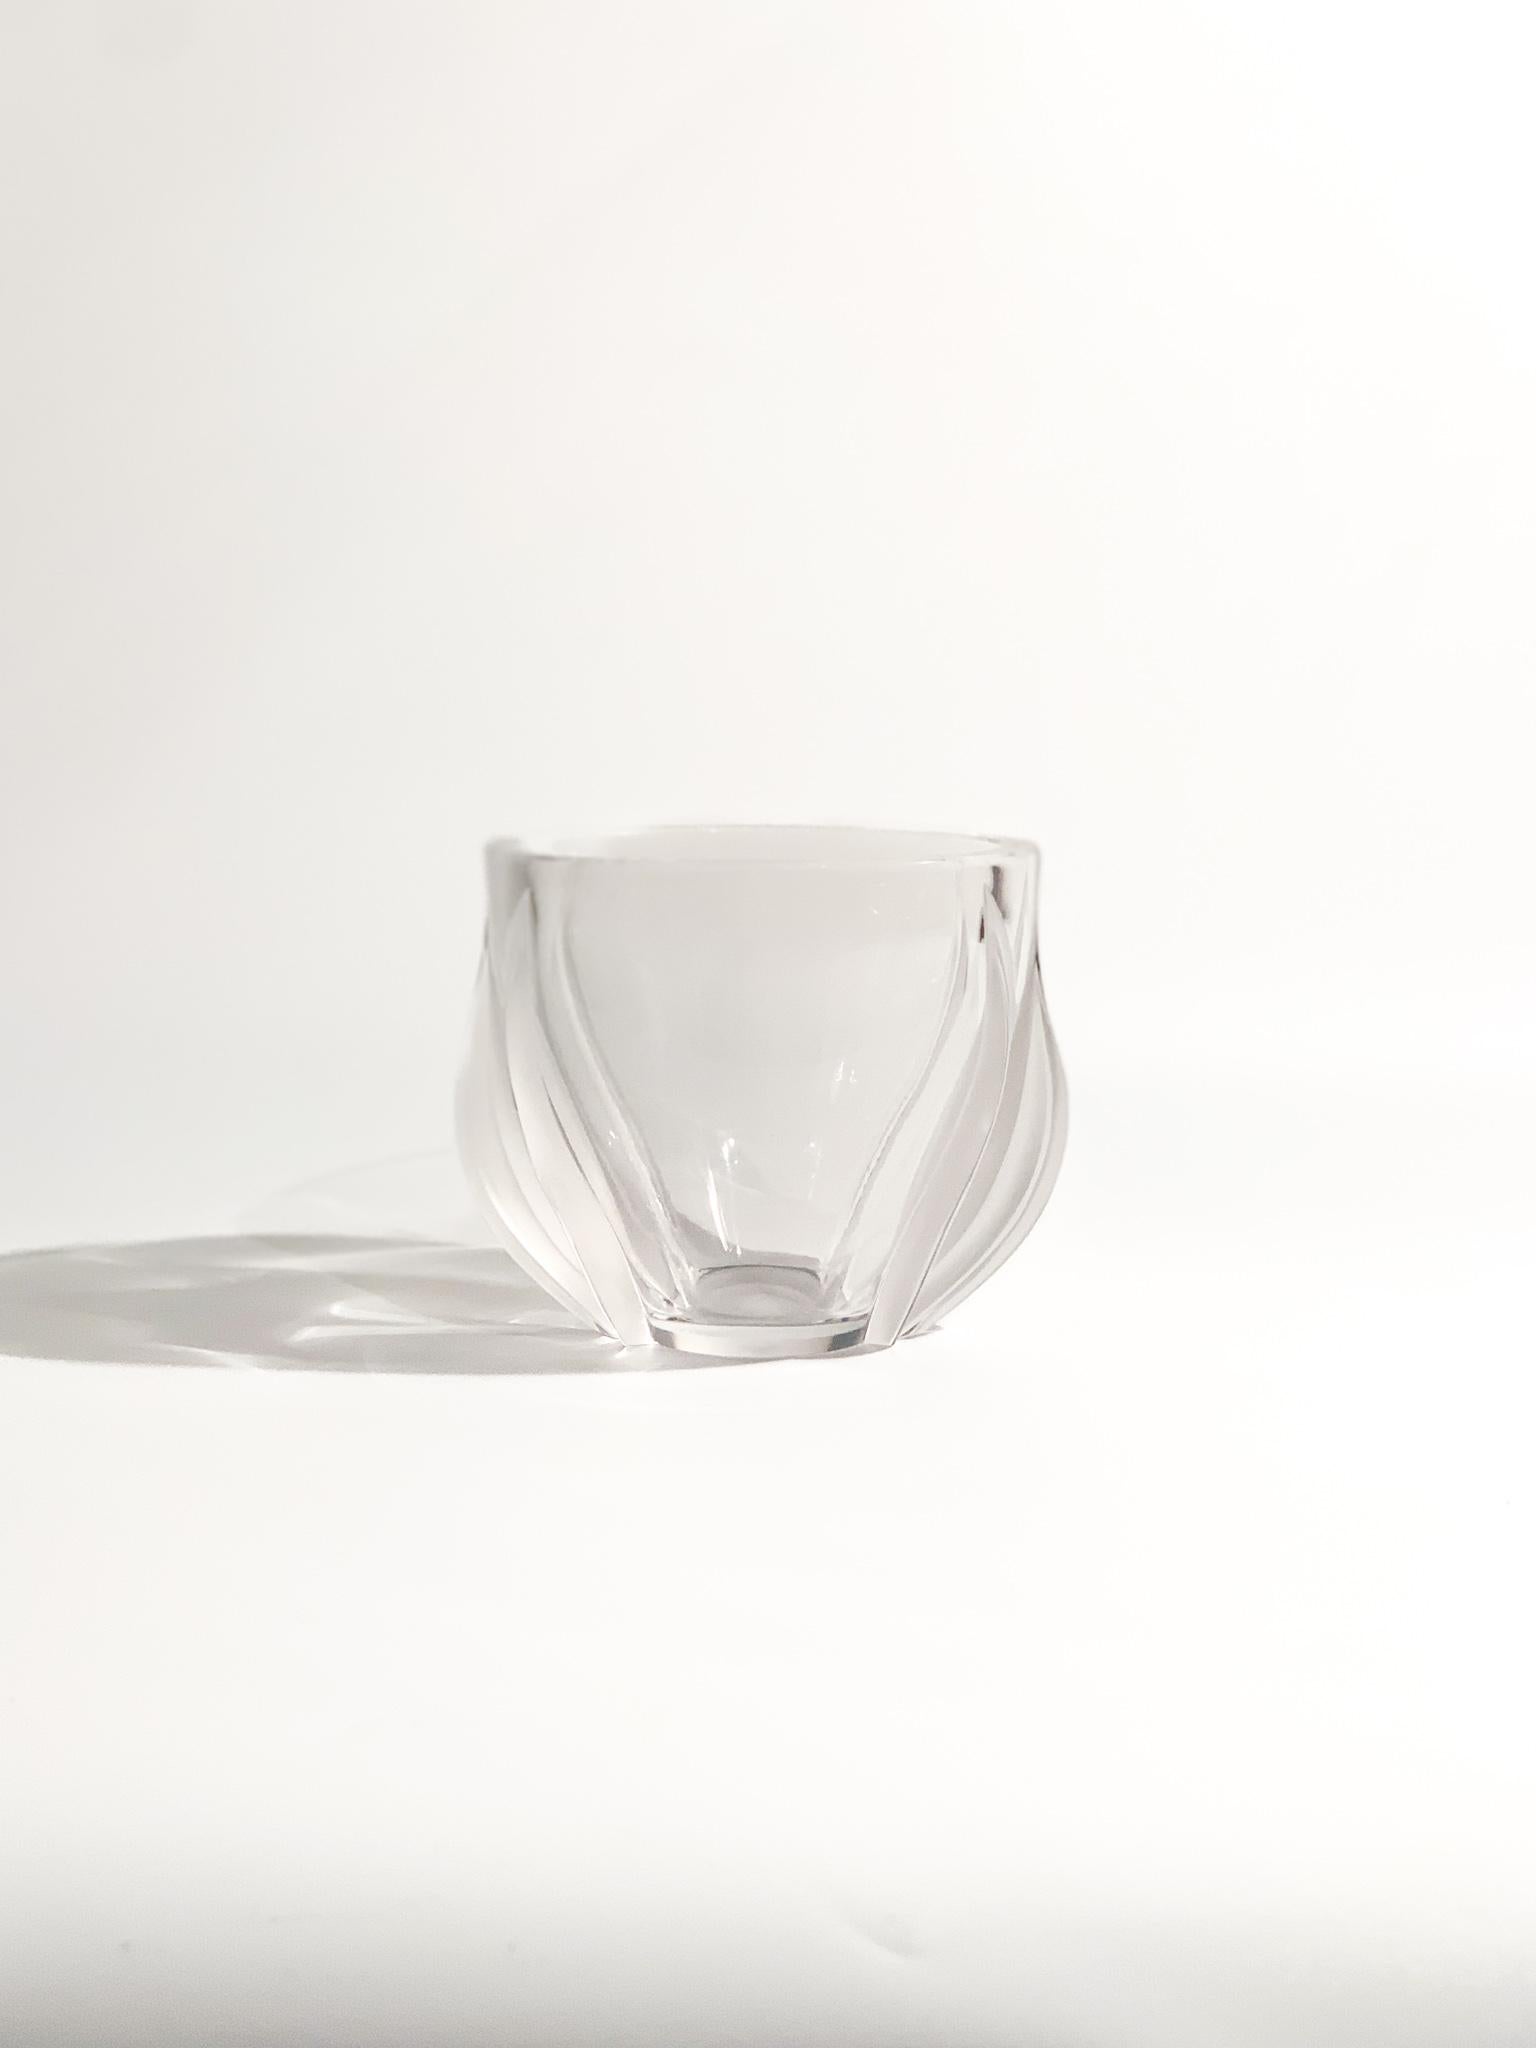 Vase en cristal de Lalique, modèle Deux Tulipes, fabriqué dans les années 1980

Ø cm 13 h cm 10

I Cristaux de Lalique  est née de l'idée de René Lalique, bijoutier et verrier français. 

Au cours de sa carrière, il a collaboré avec diverses marques